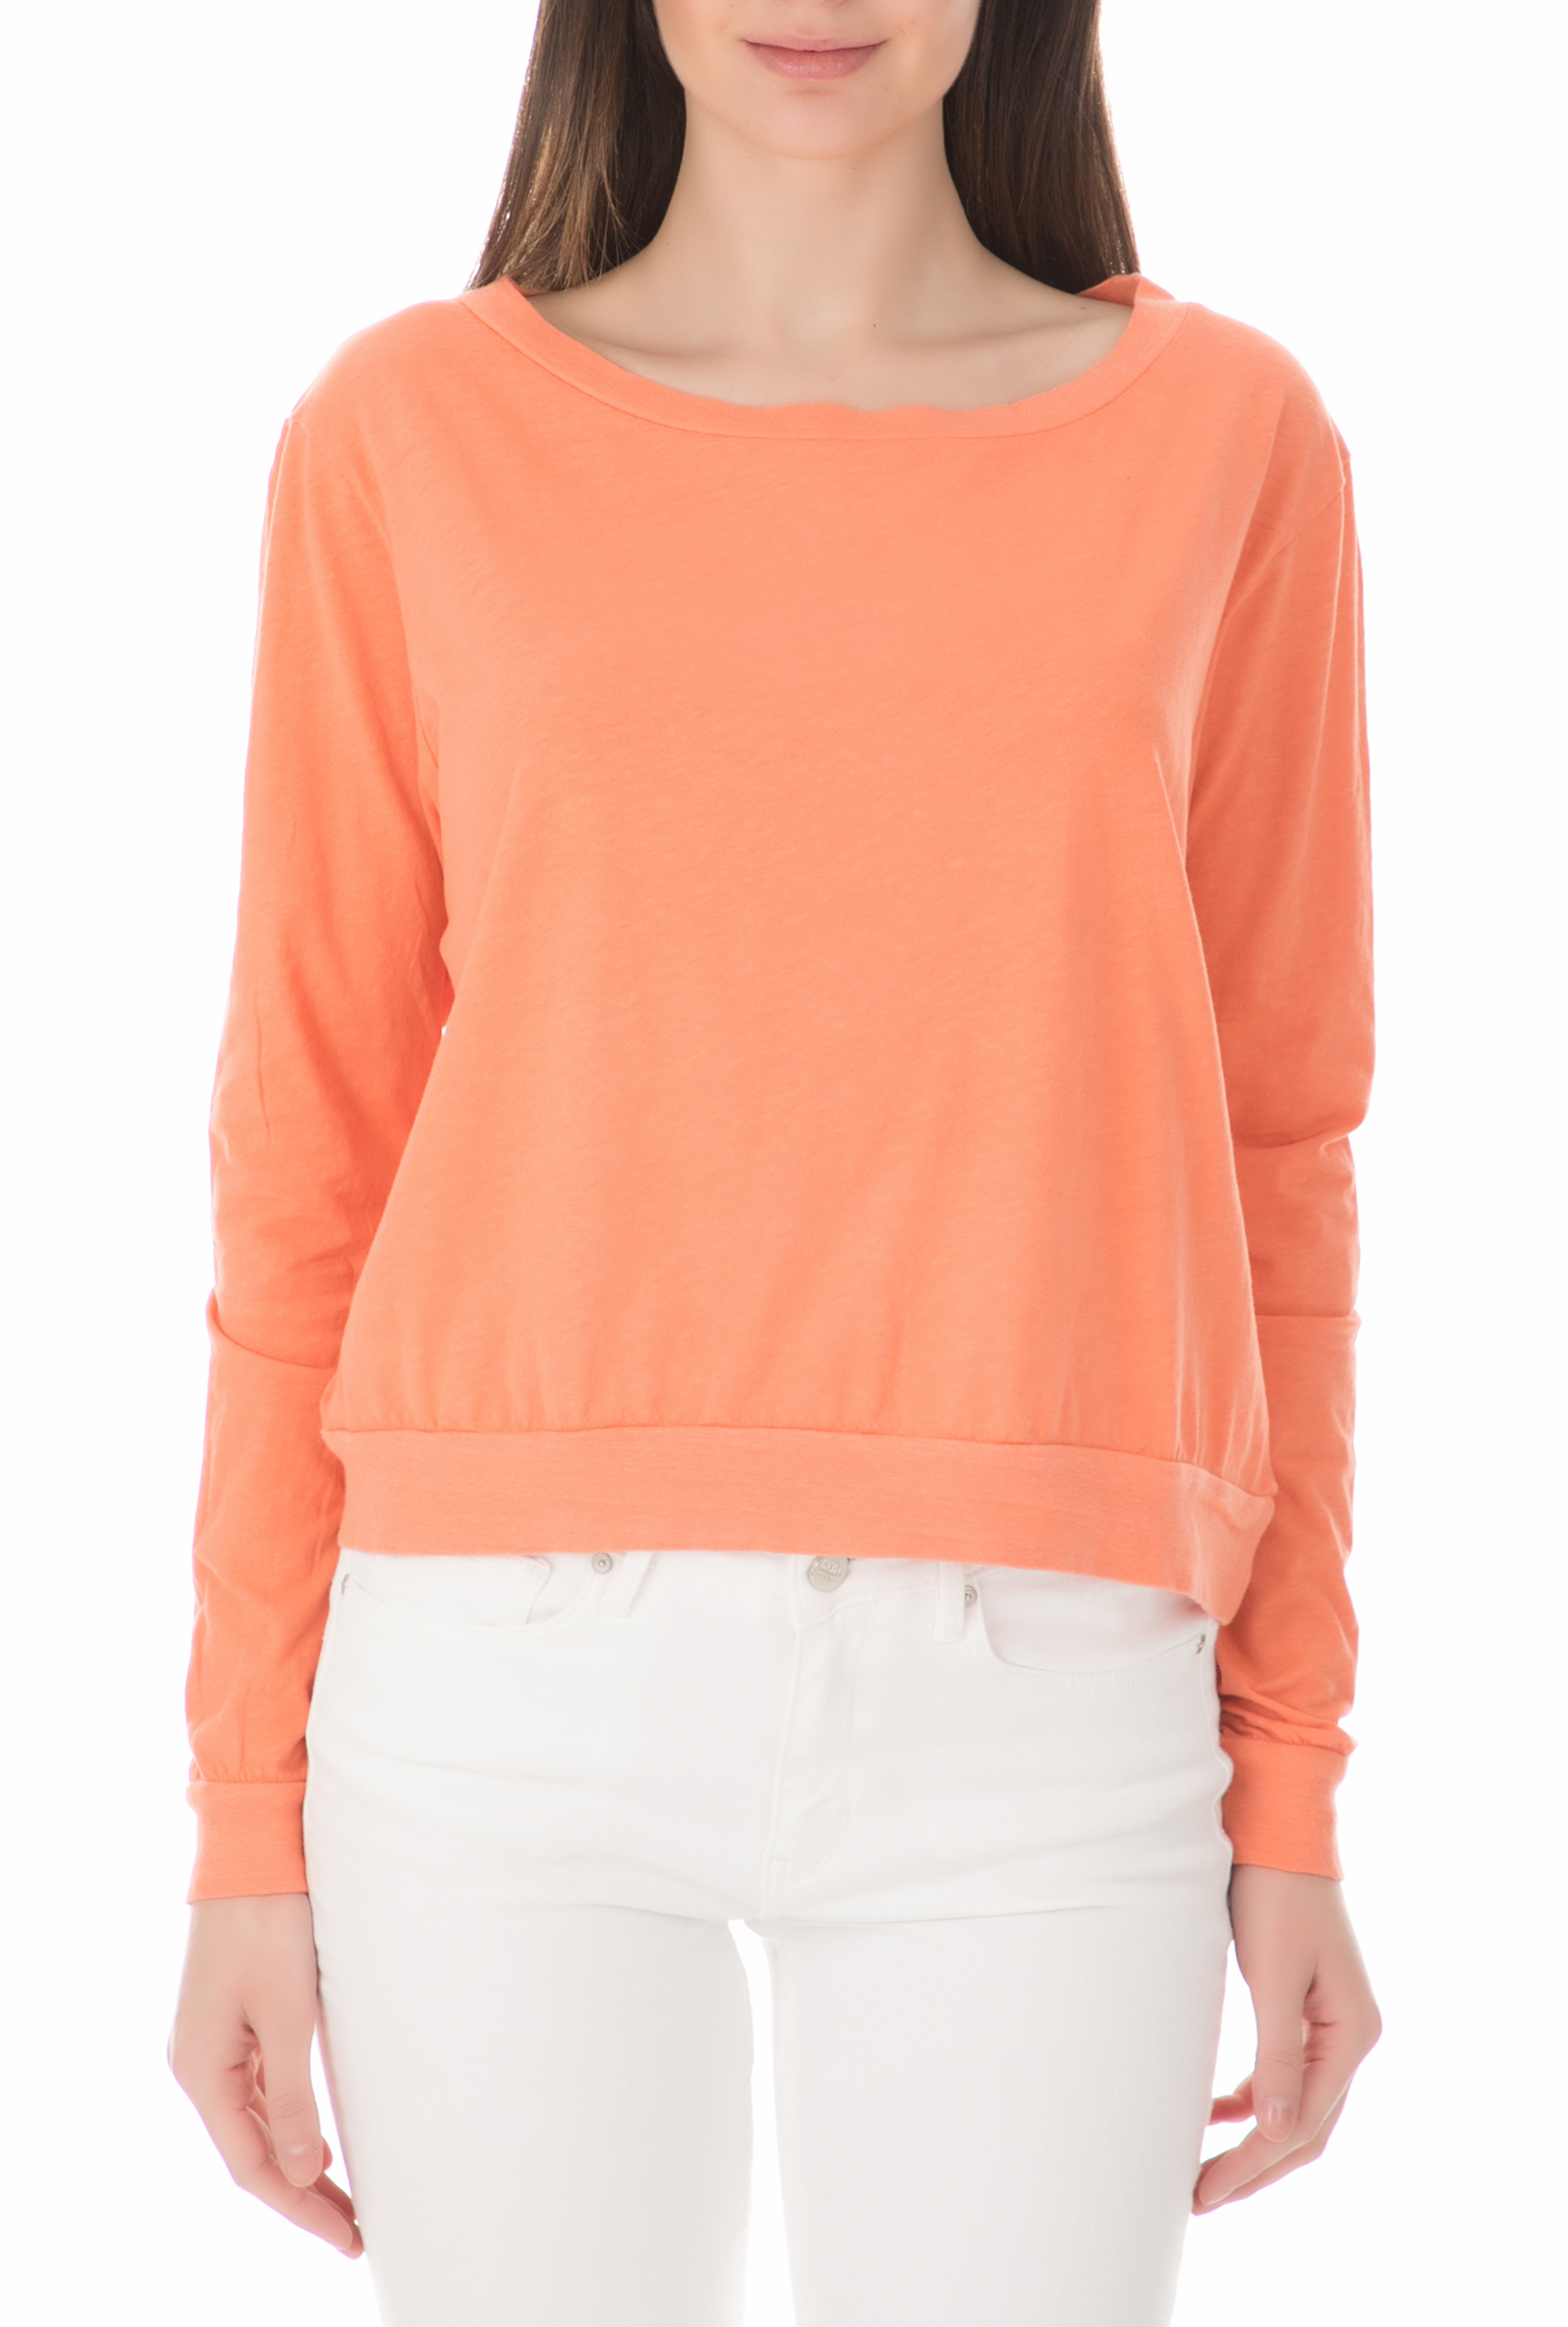 AMERICAN VINTAGE Γυναικεία μπλούζα REIKO πορτοκαλί